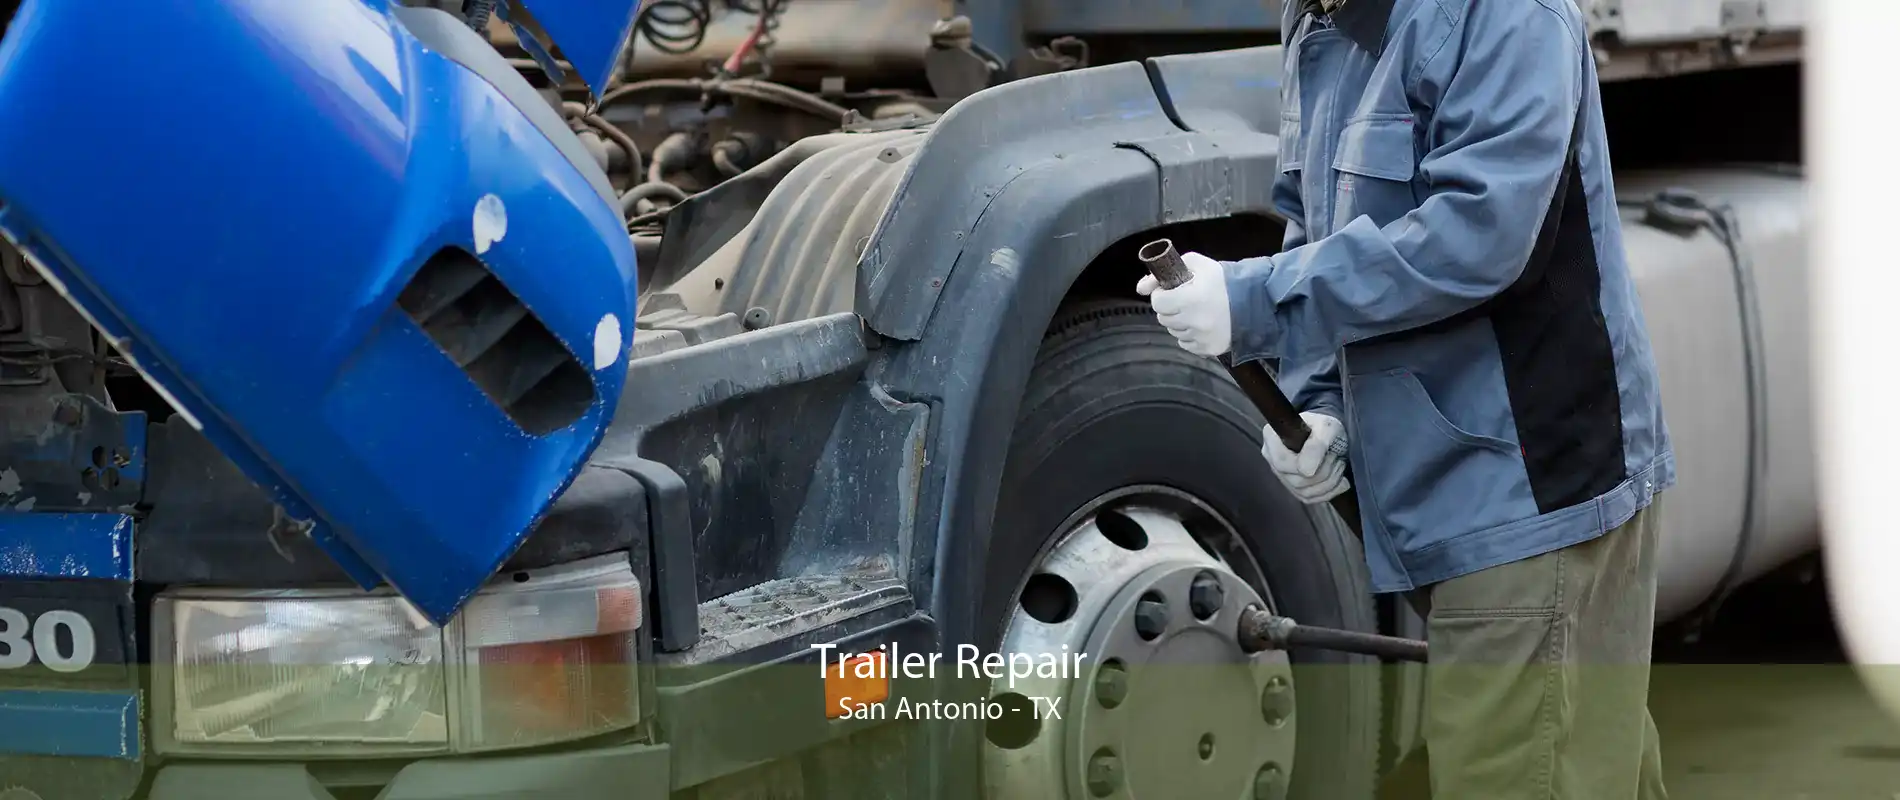 Trailer Repair San Antonio - TX